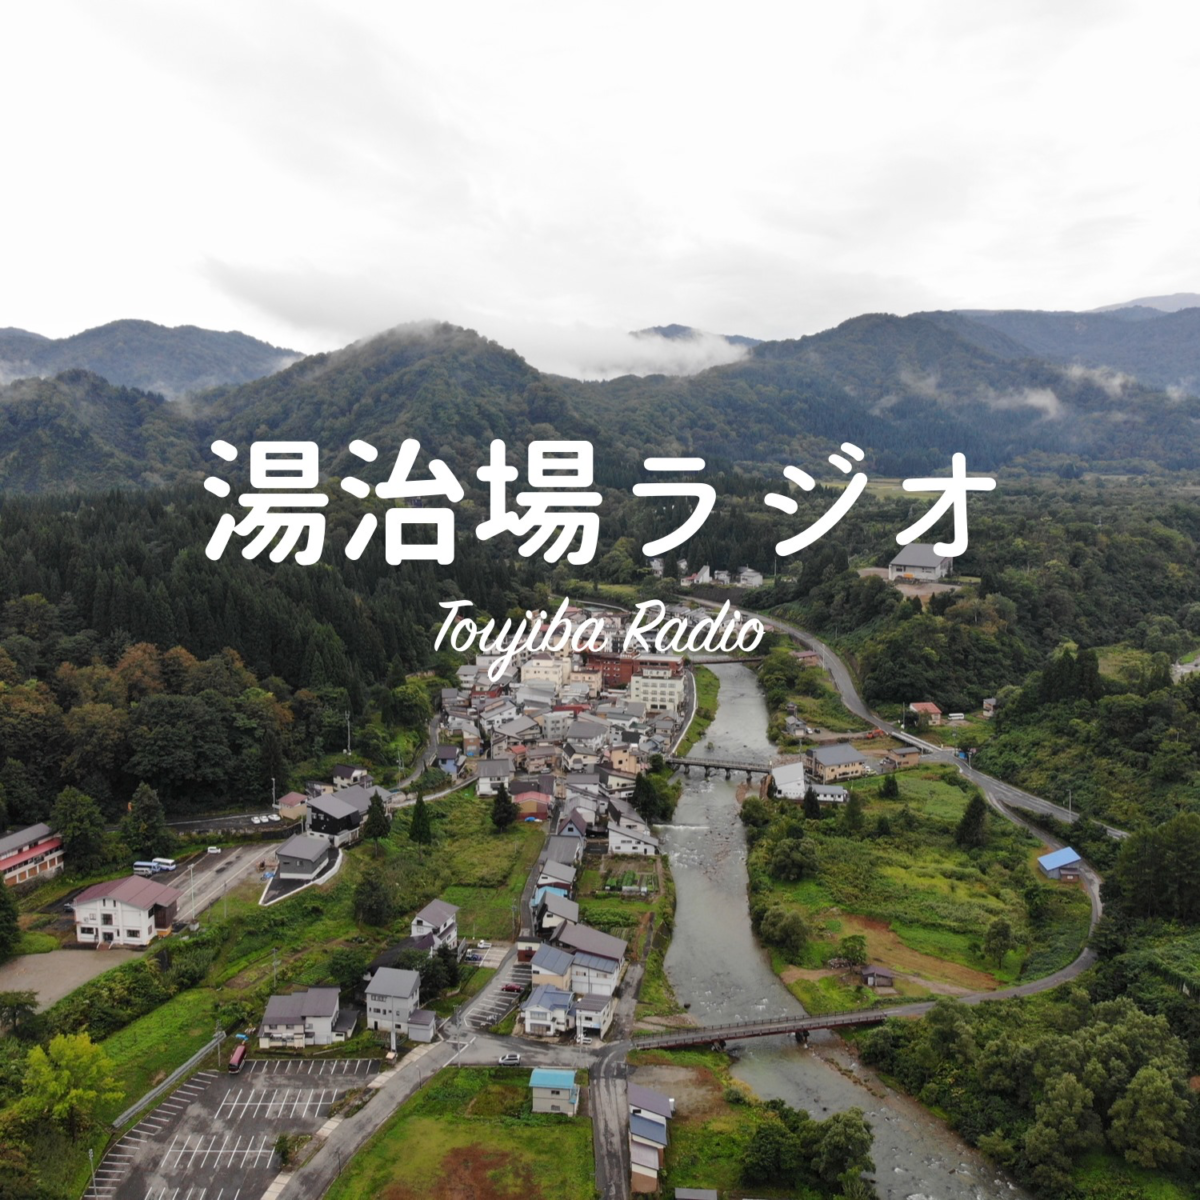 山形県大蔵村 もっと好きになる 湯治場風情 日本で最も美しい村 連合